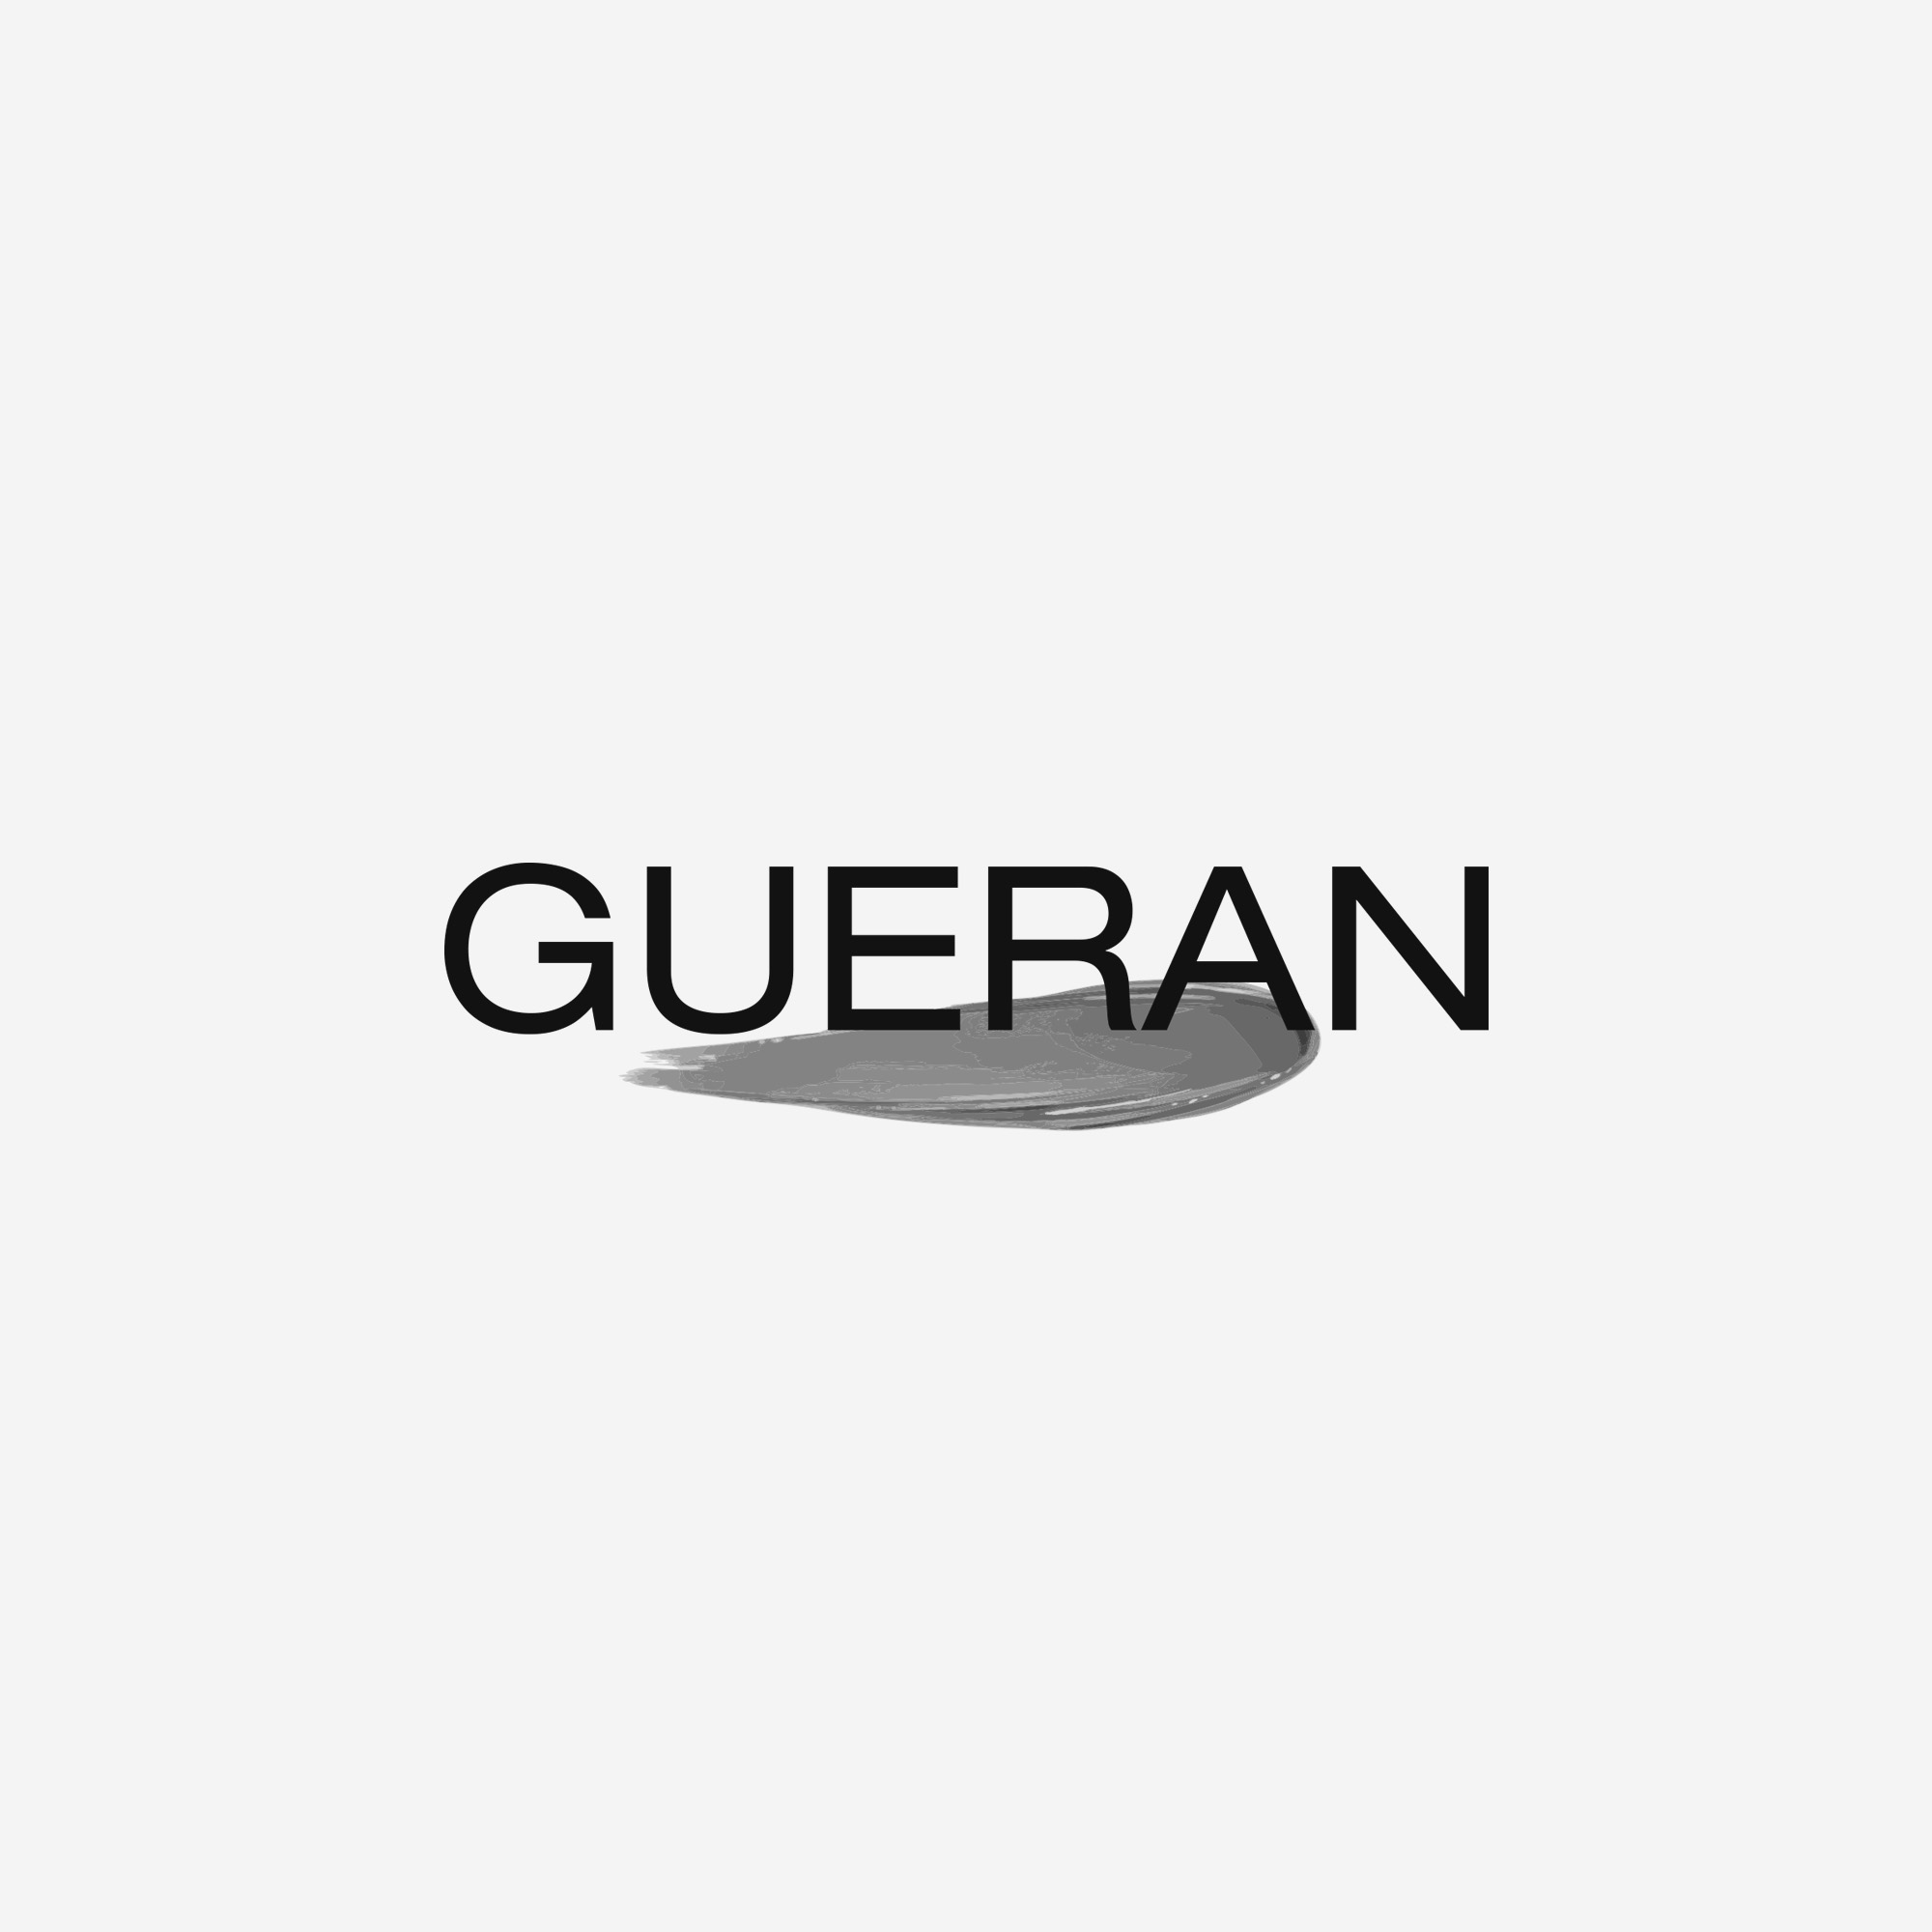 画像未登録時の代替え画像のGUERANのロゴバナー